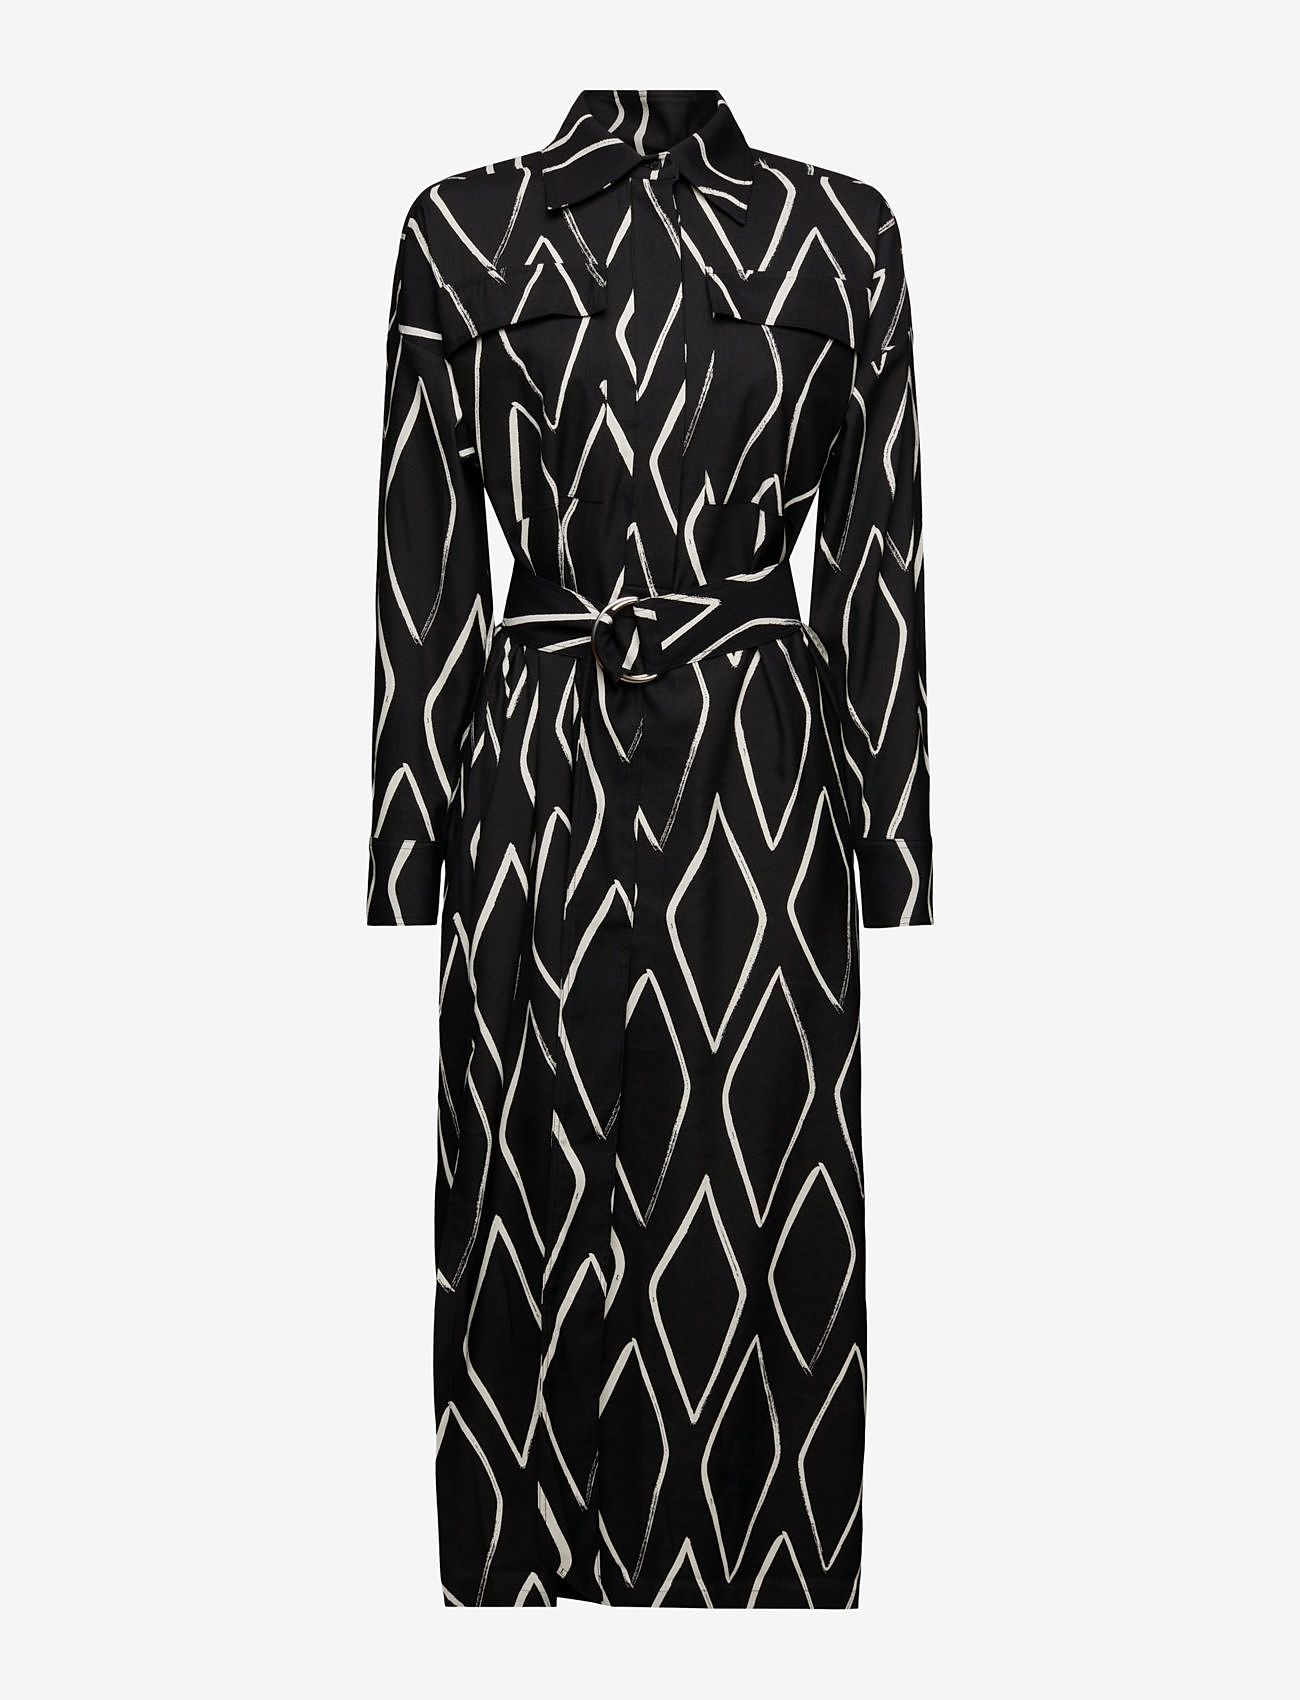 Esprit Casual - Dresses light woven - overhemdjurken - black 2 - 0